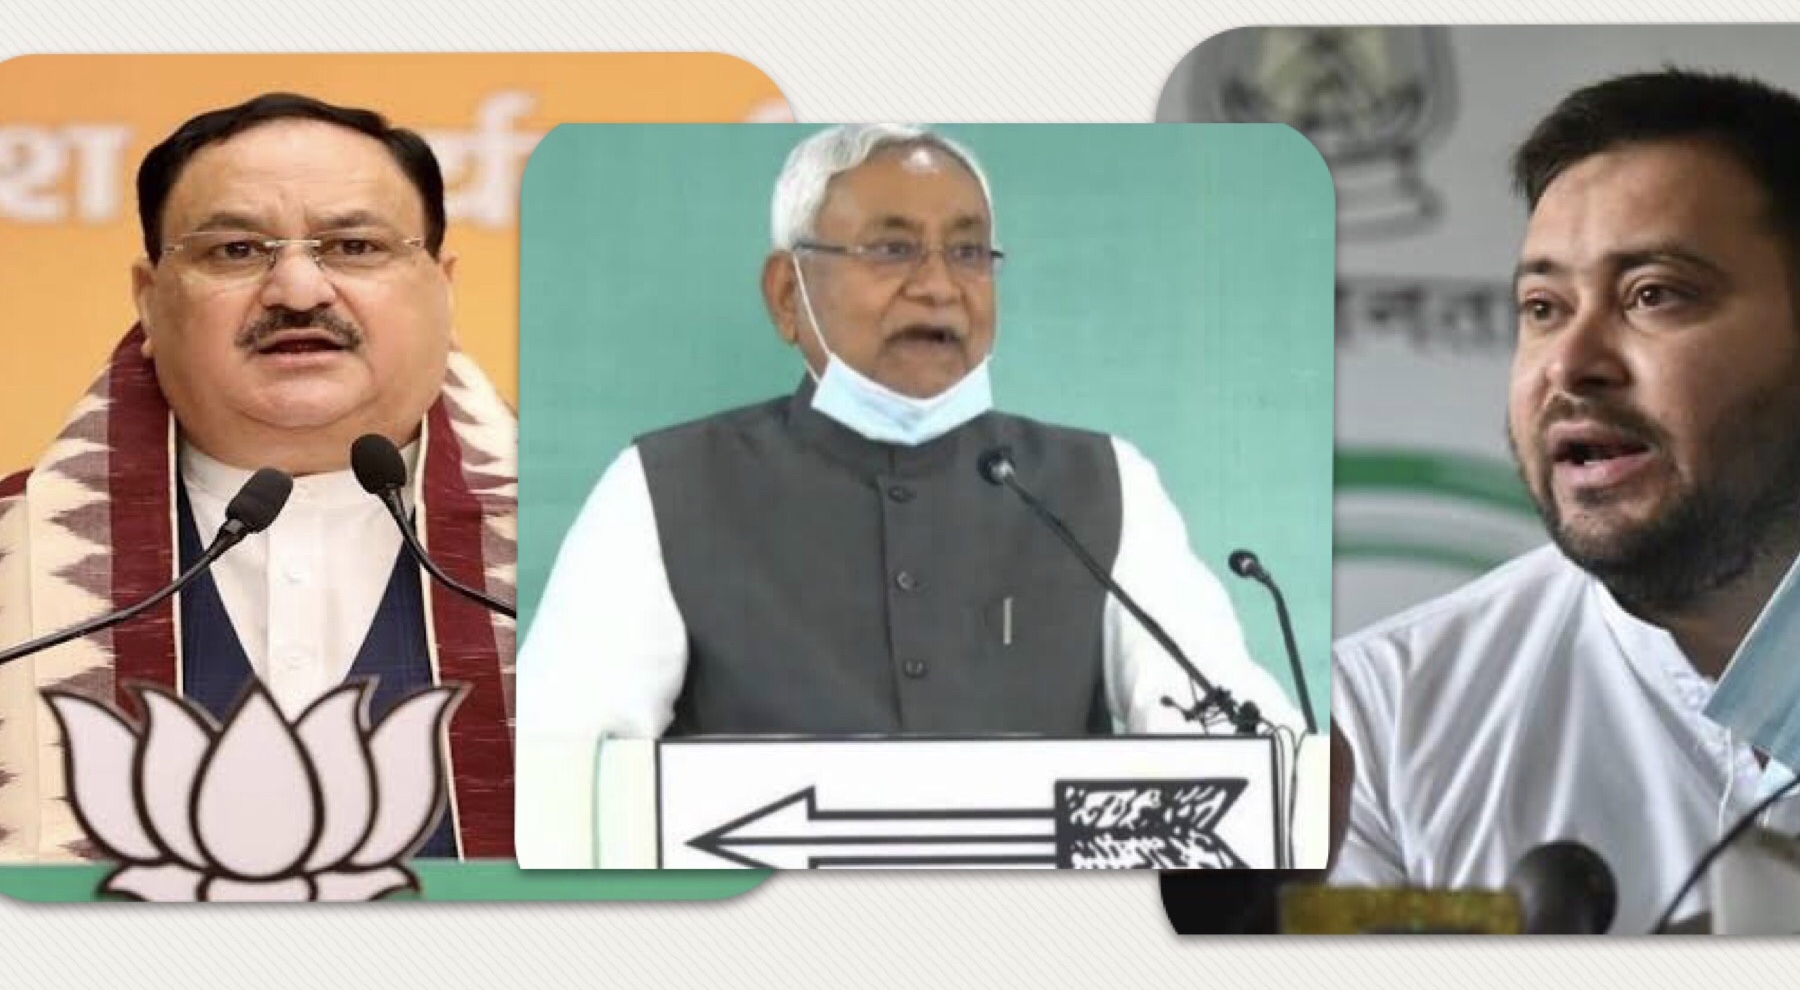 Bihar Elections 2020: पहले चरण के चुनाव प्रचार का आज आख़िरी दिन, जेपी नड्डा, नीतीश कुमार और तेजस्वी करेंगे रैलियां